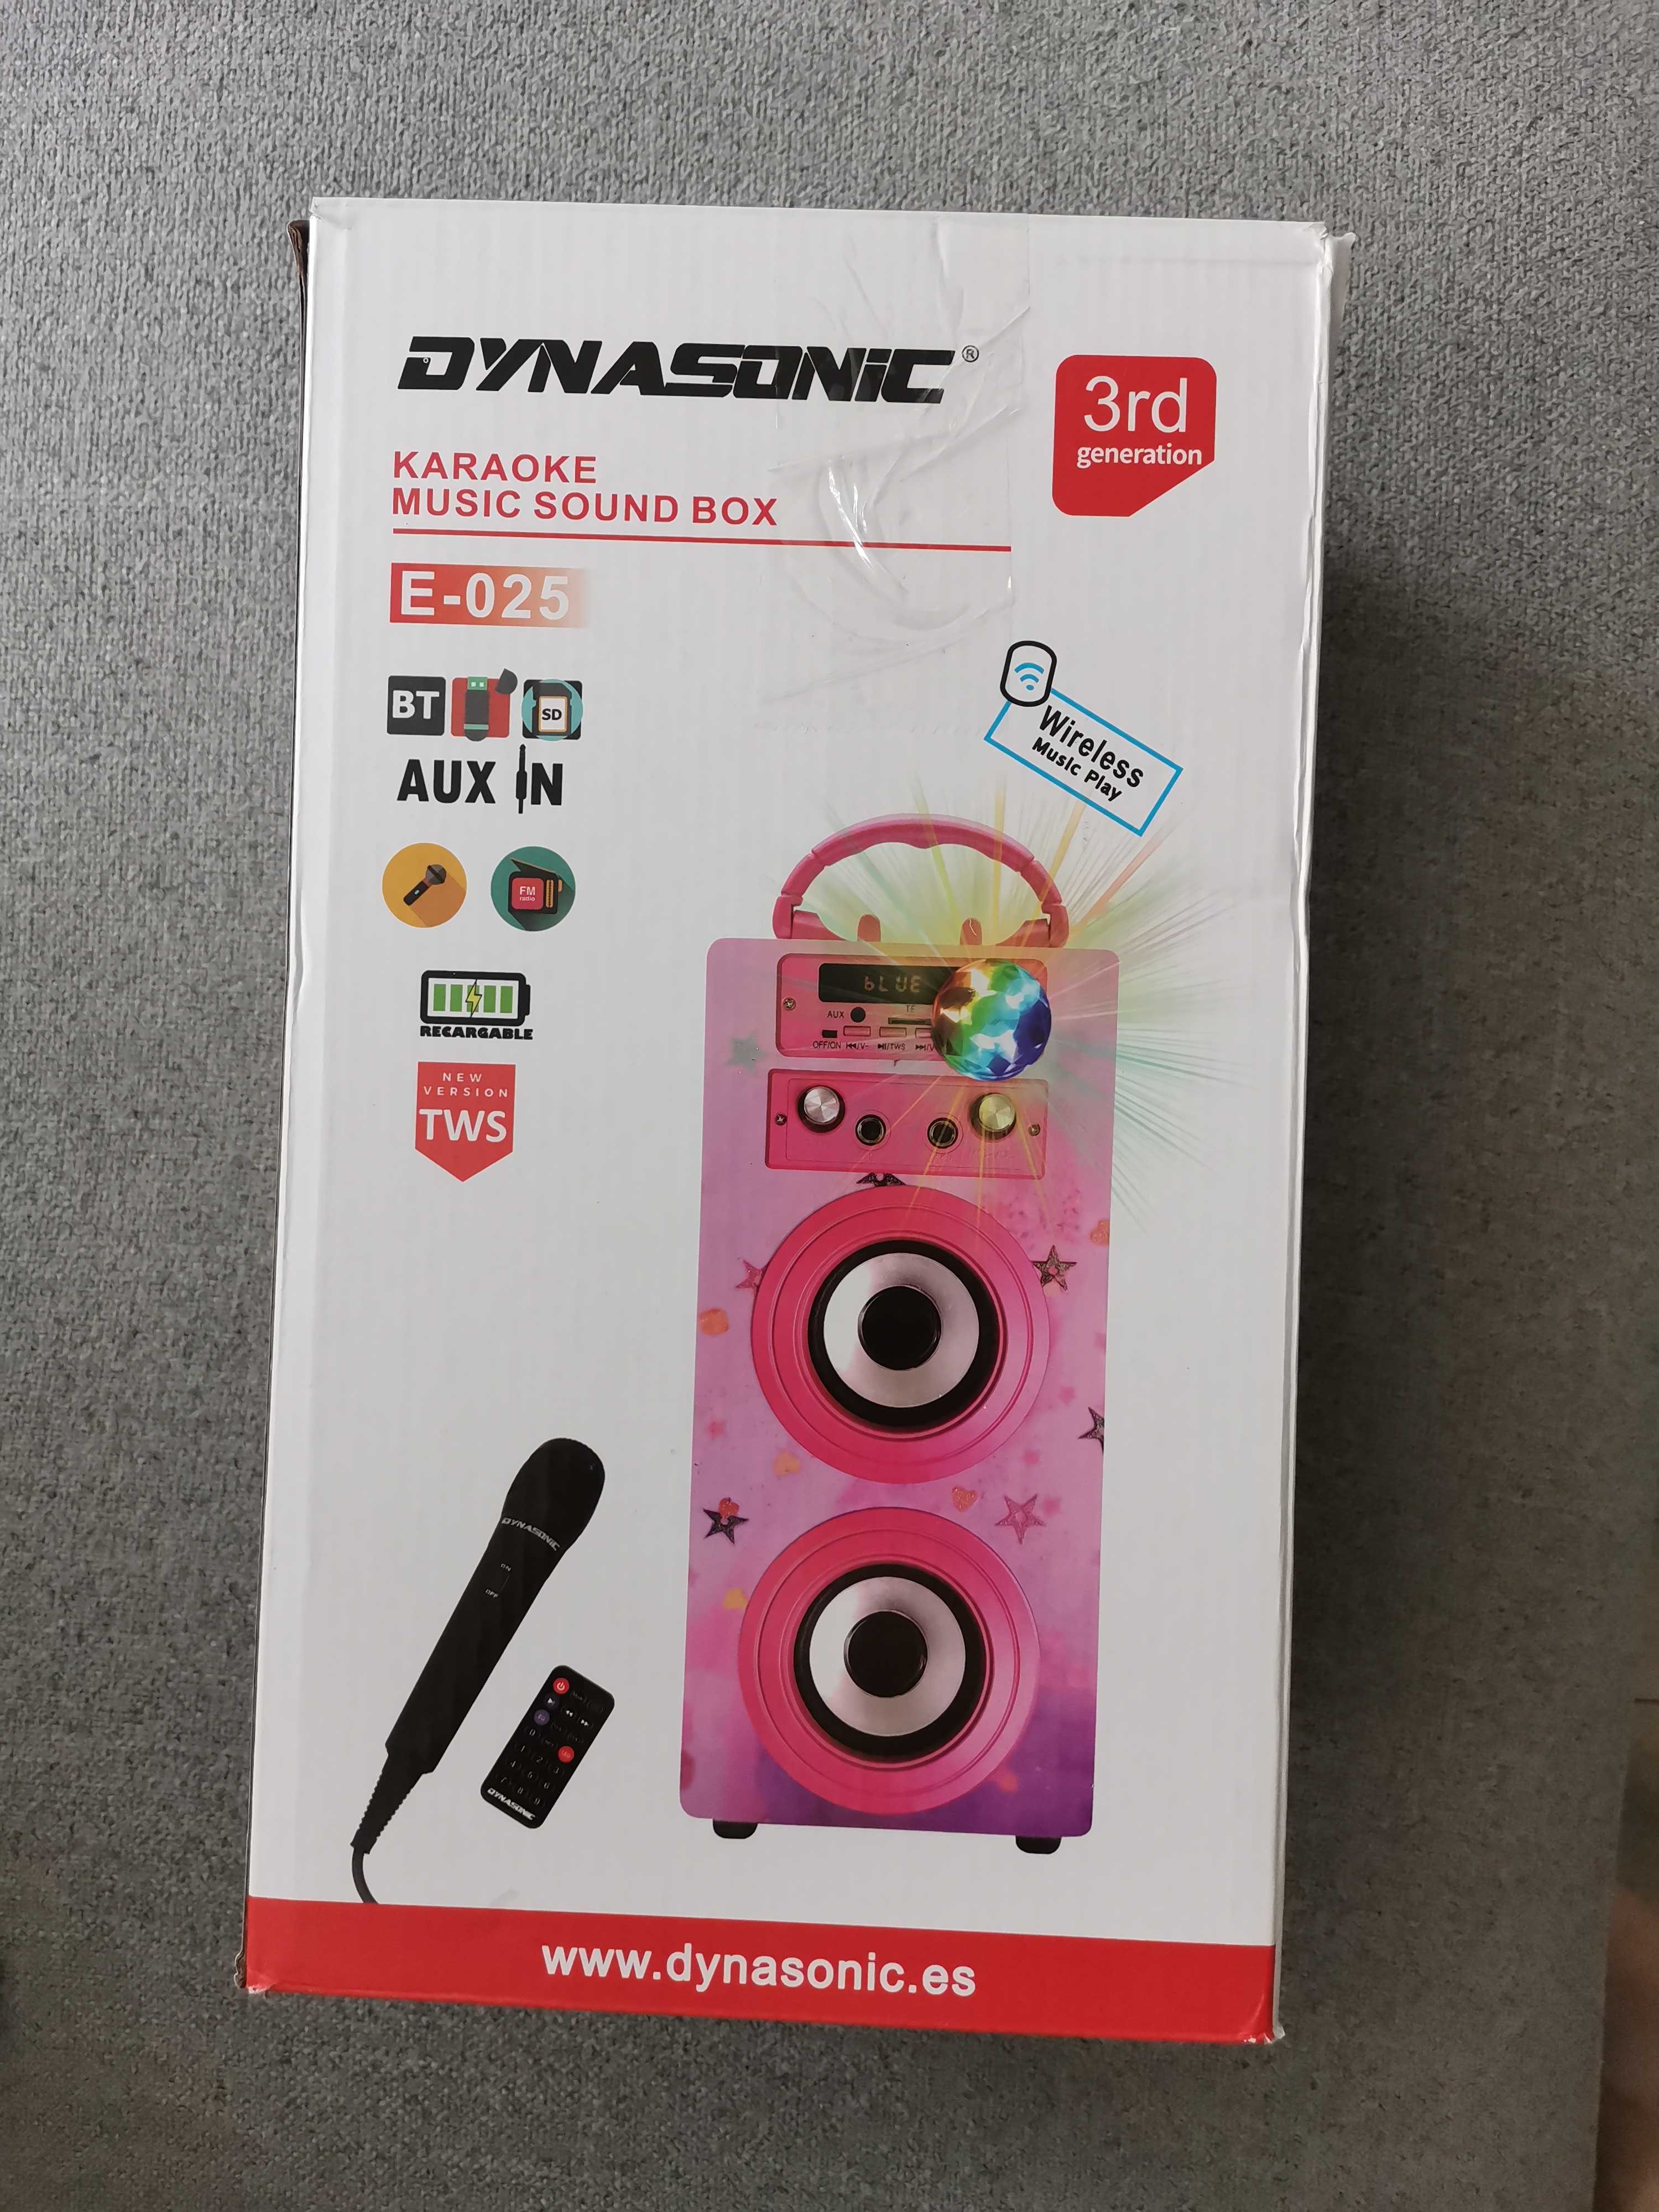 Przenośny głośnik karaoke dla dzieci firmy Dynasonic-025